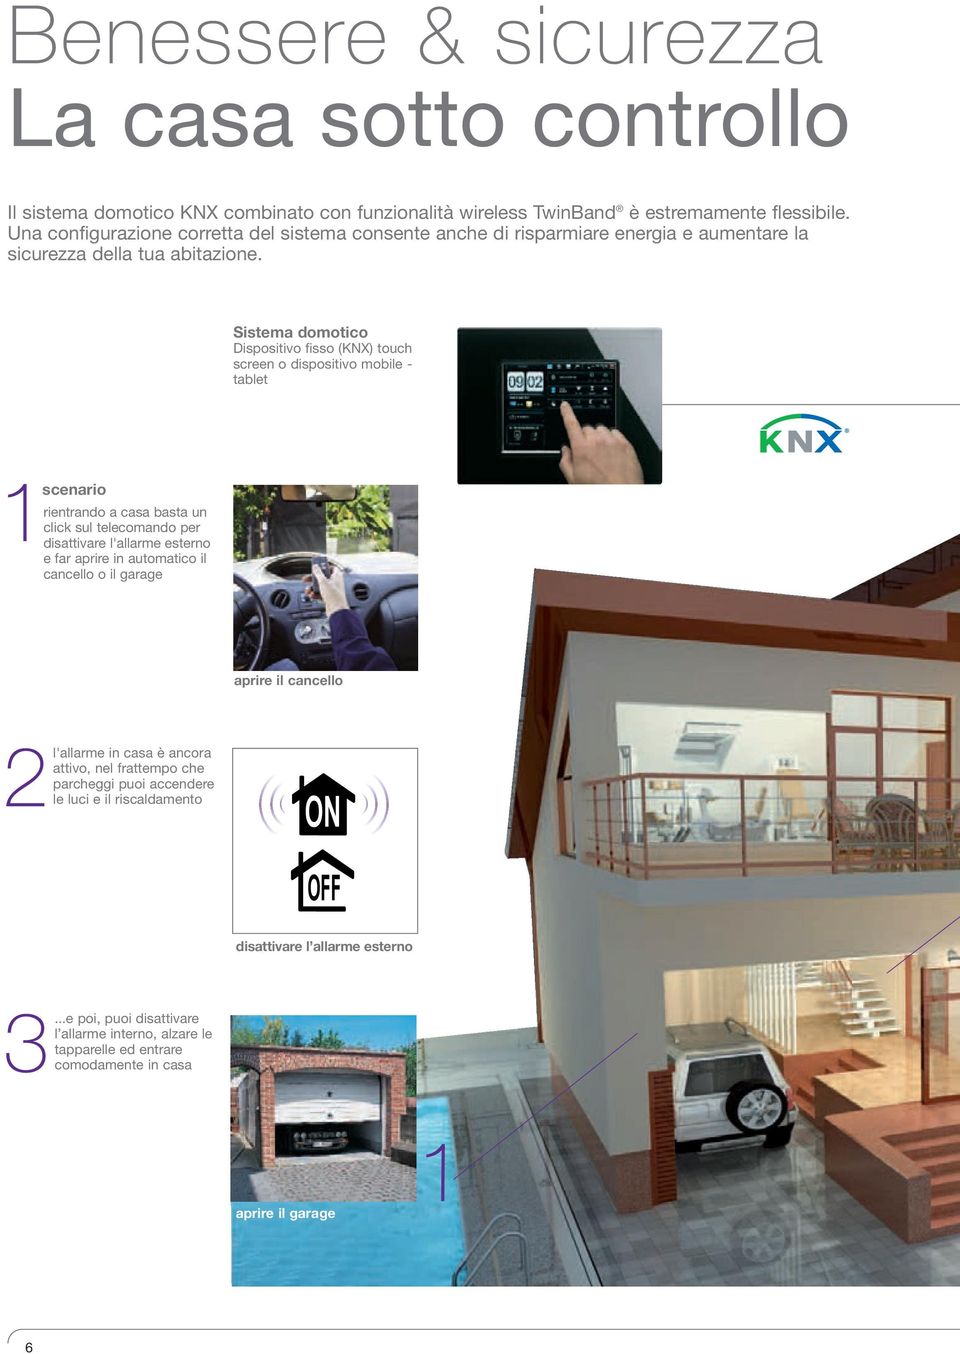 Sistema domotico Dispositivo fisso (KNX) touch screen o dispositivo mobile - tablet 1scenario rientrando a casa basta un click sul telecomando per disattivare l'allarme esterno e far aprire in